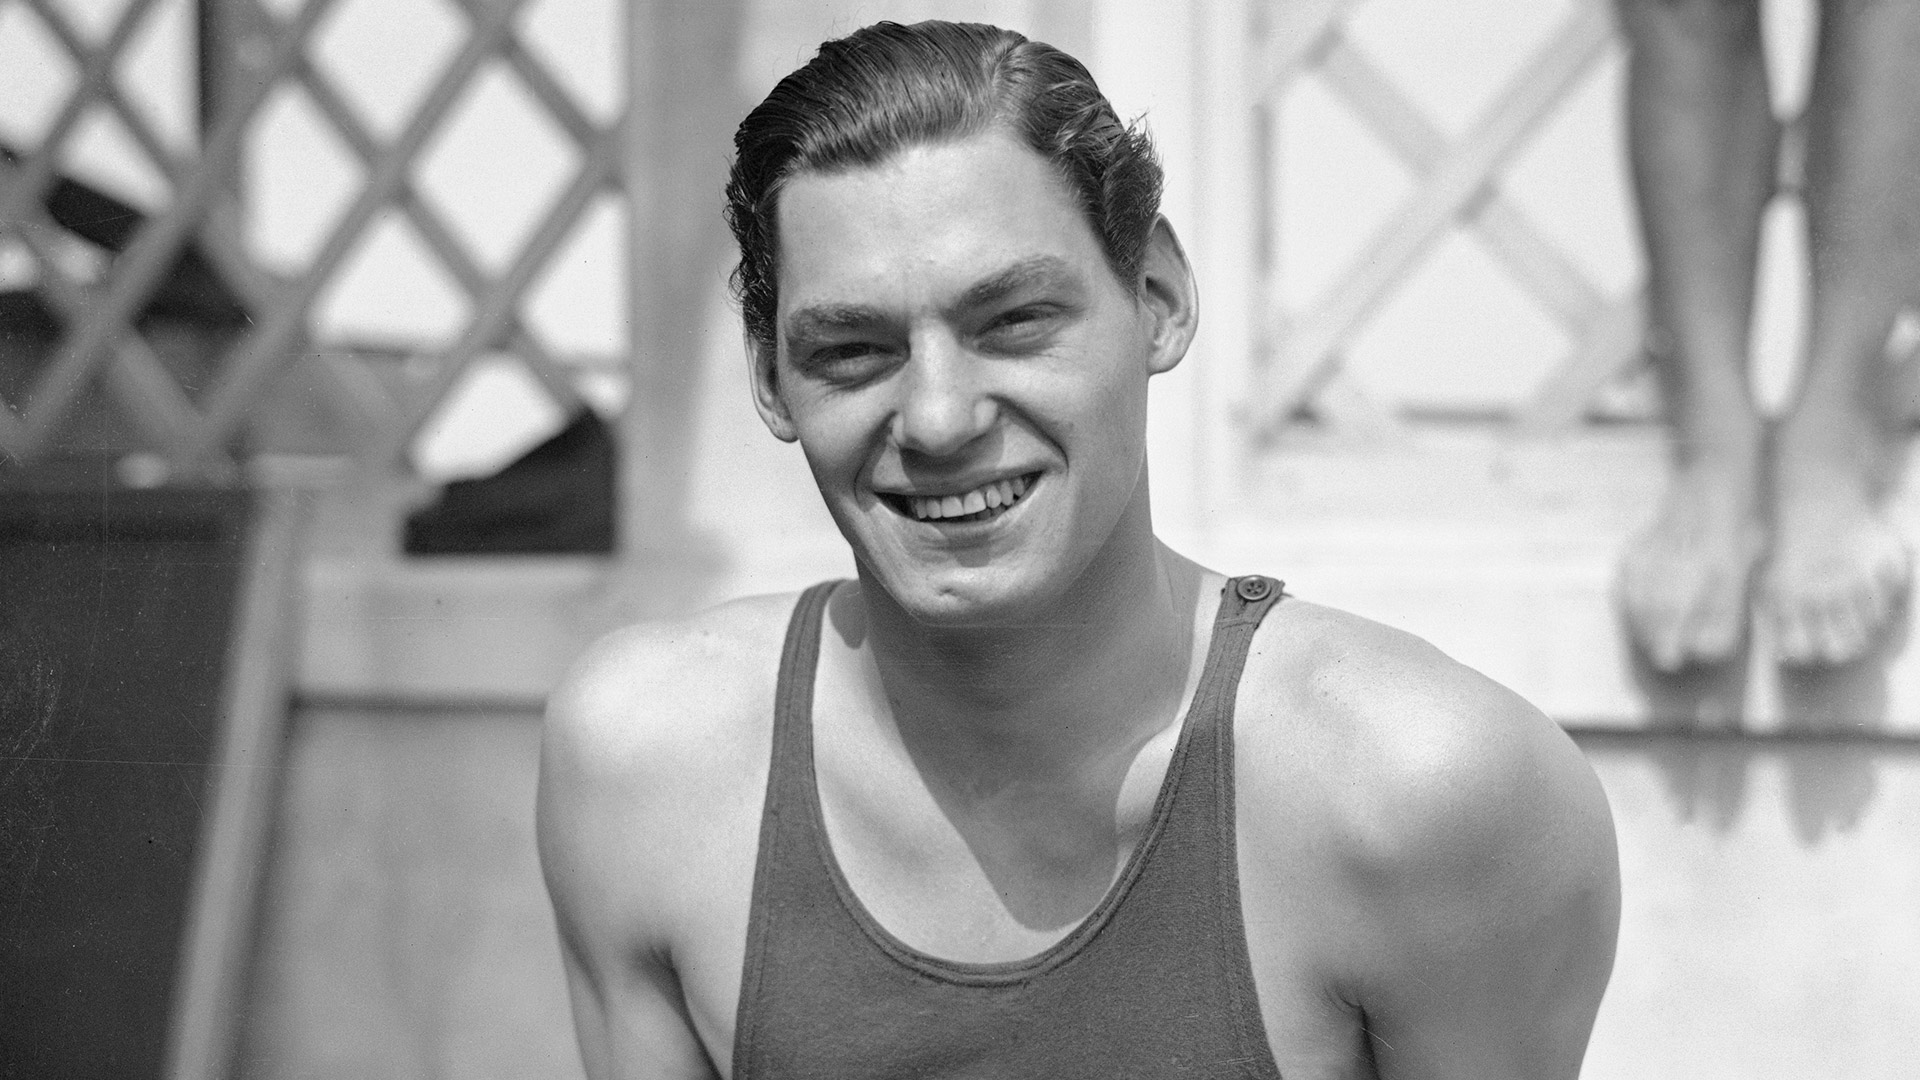 Johnny Wiesmuller cuando era joven y ganaba Olimpiadas como nadador (Bettmann Archive)
